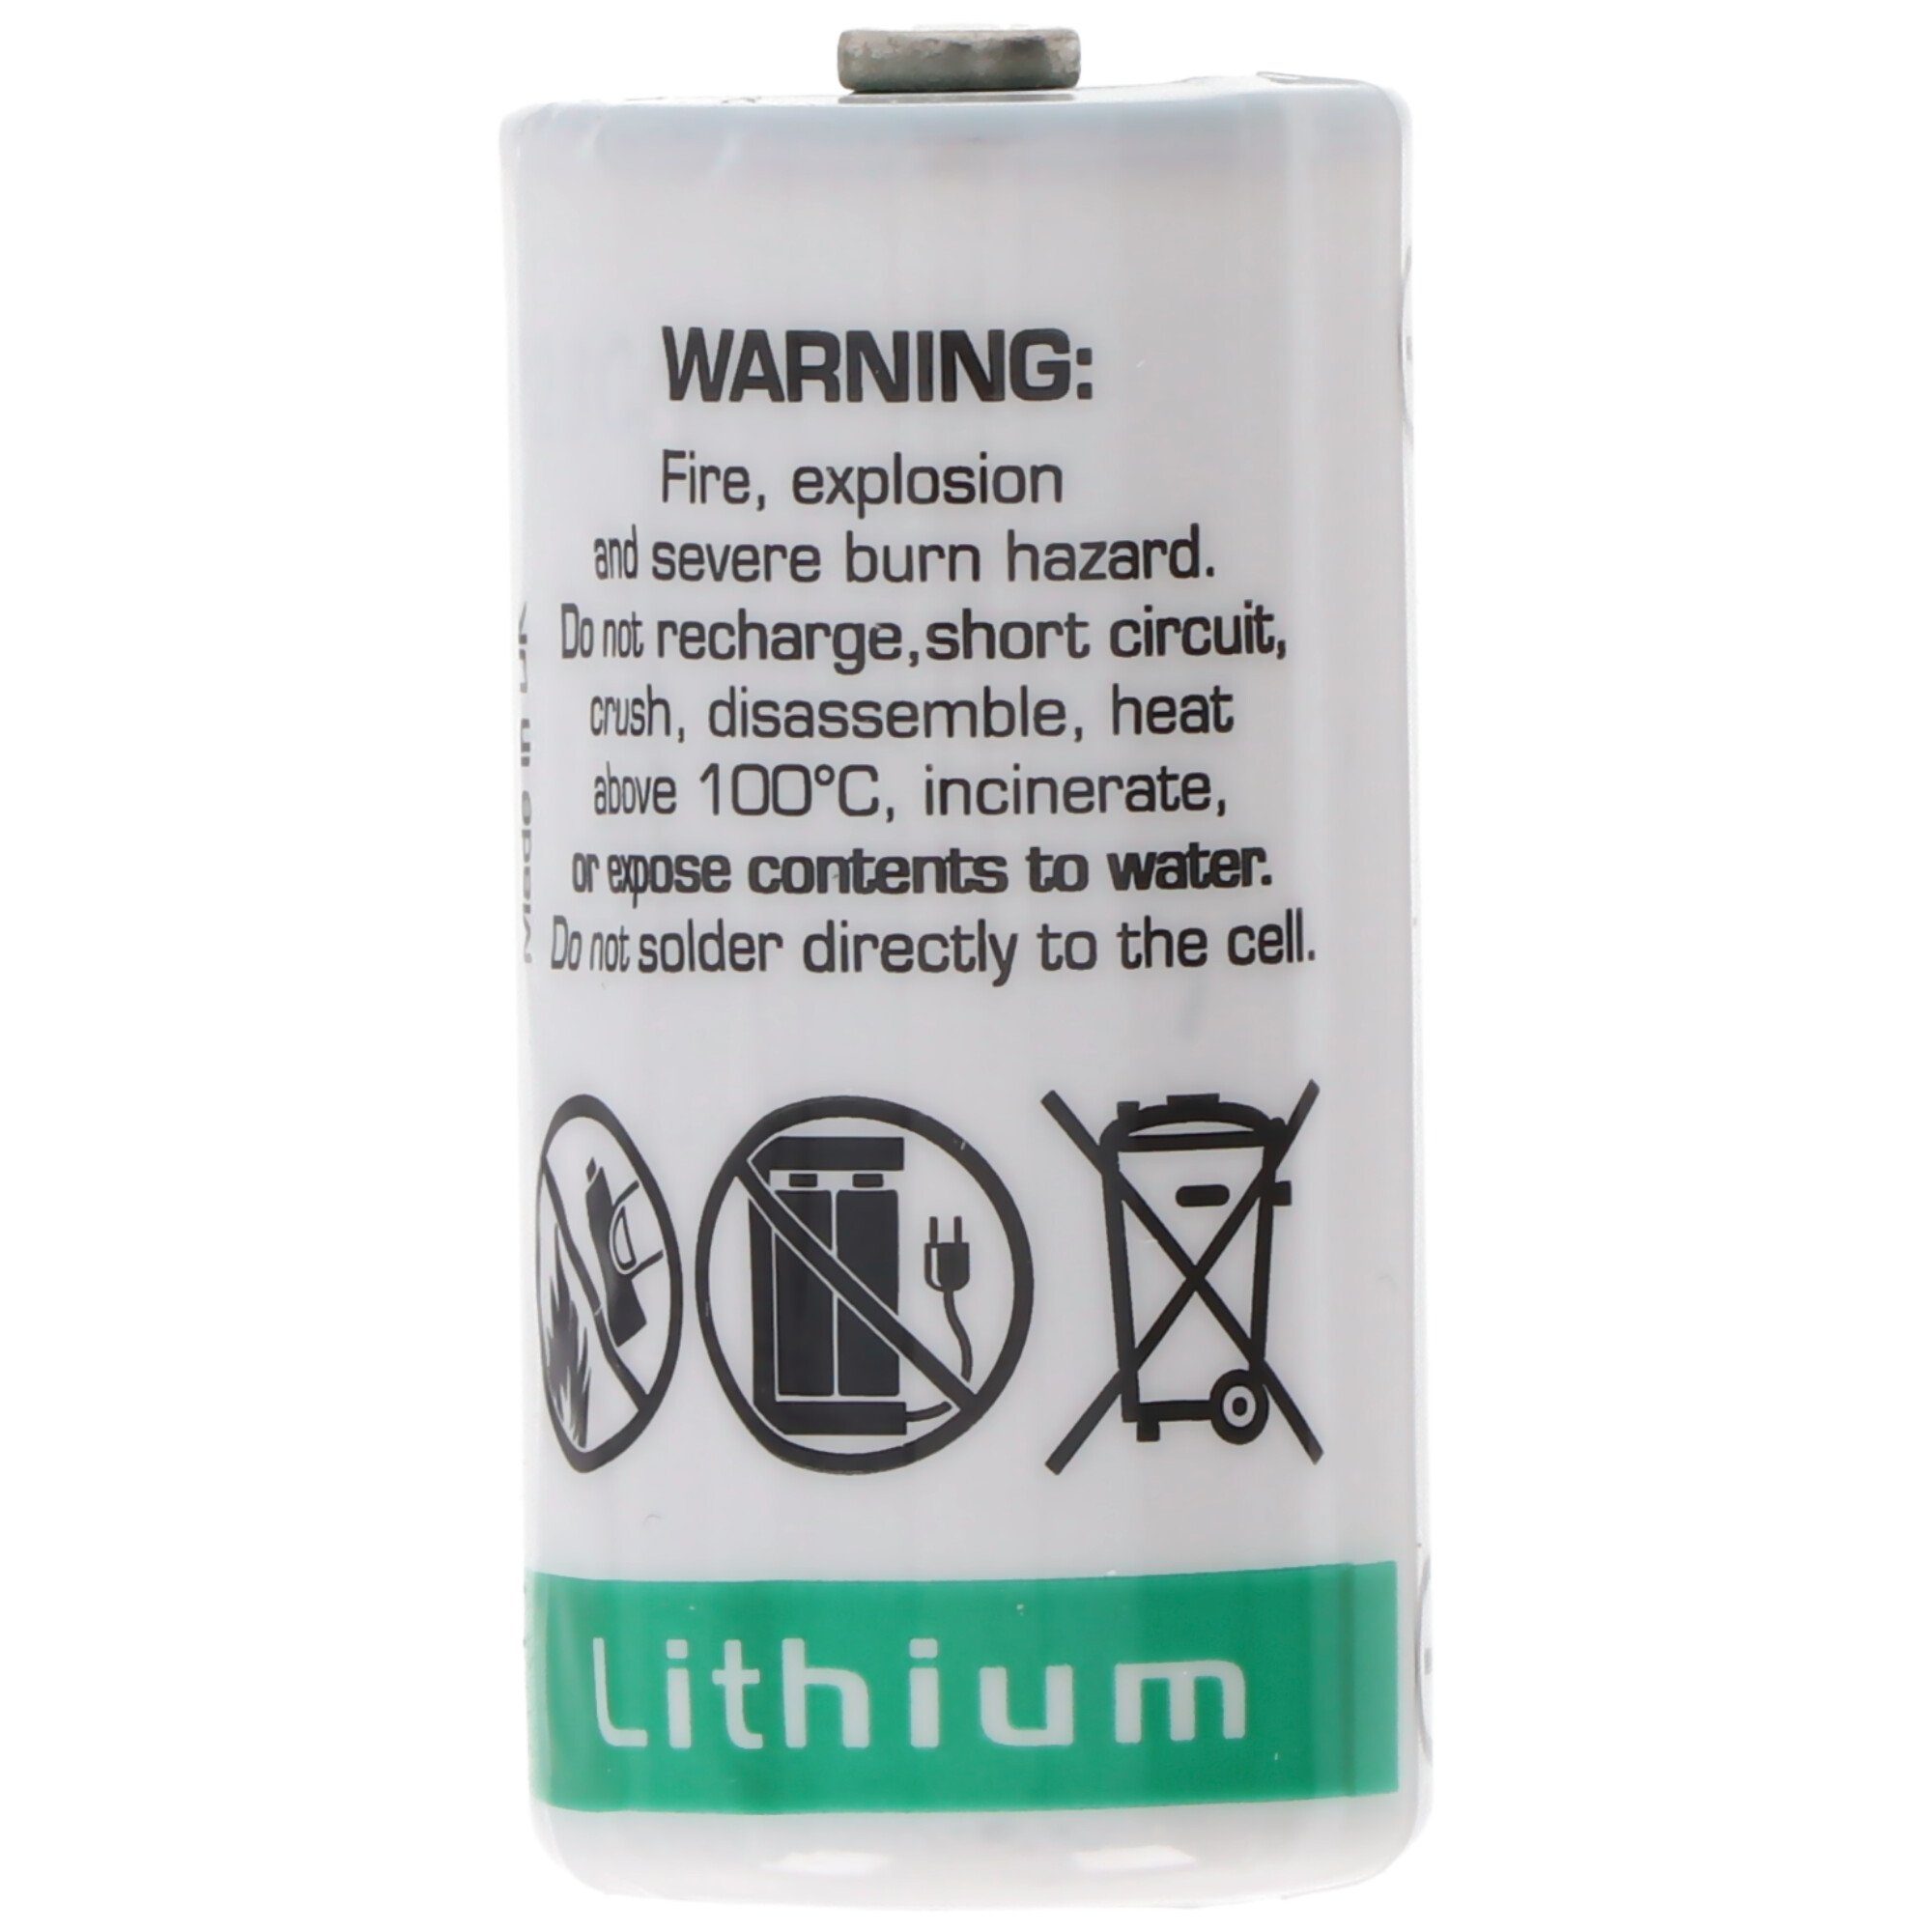 2,1 LS-17330 Saft Saft 3,6 Ah Lithium V Batterie, V) (3,6